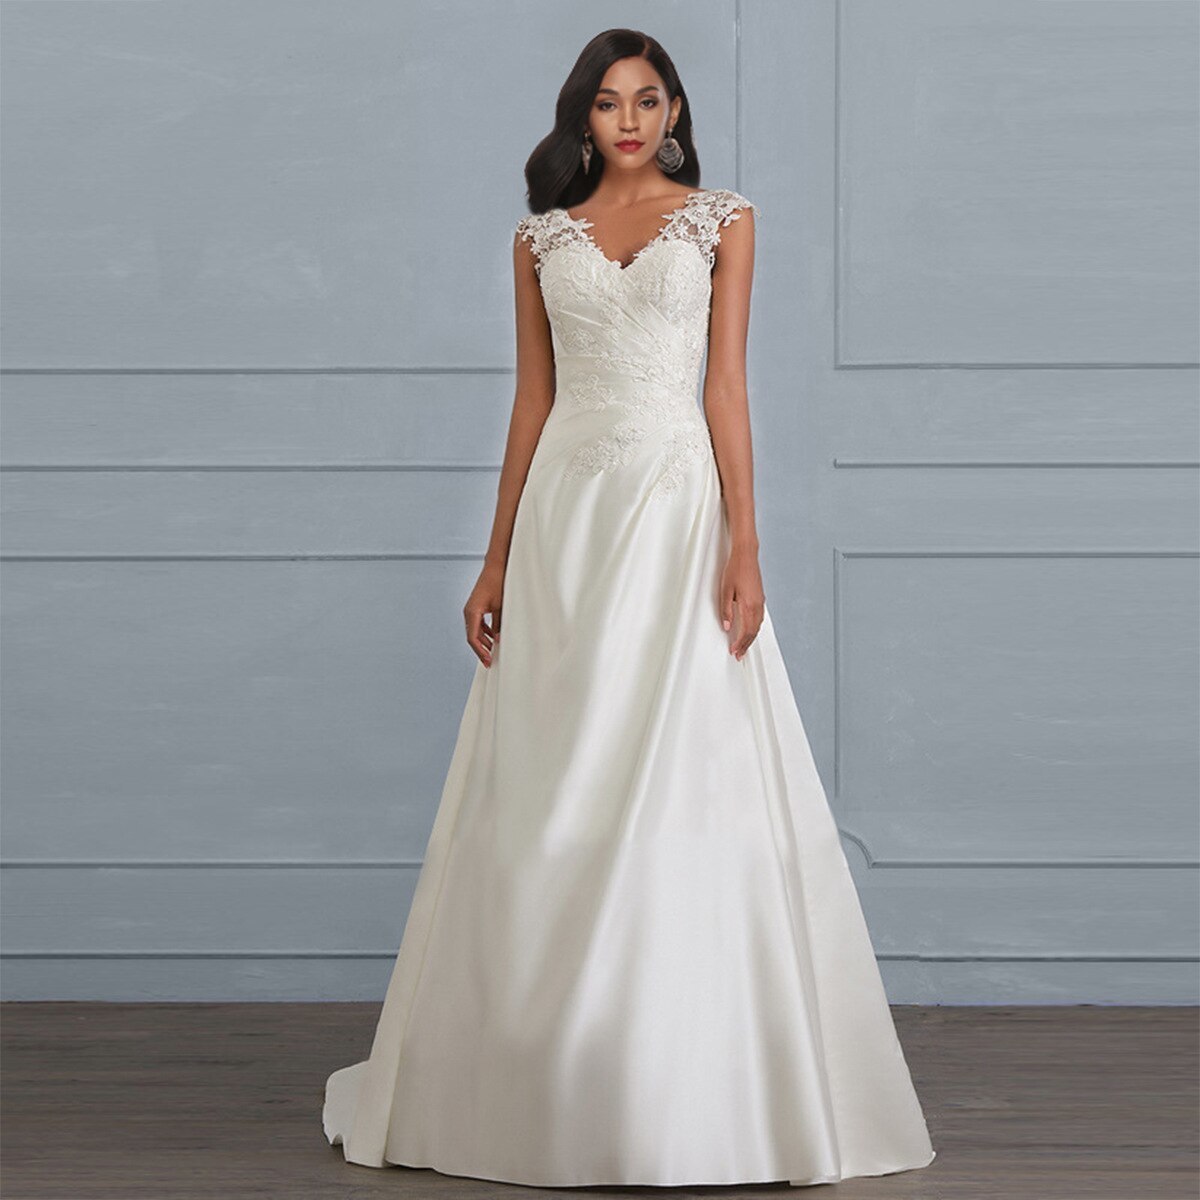  bargain * wedding dress long Vintage high waist Eve person g dress bride ... wedding summer dress no sleeve S~5XL